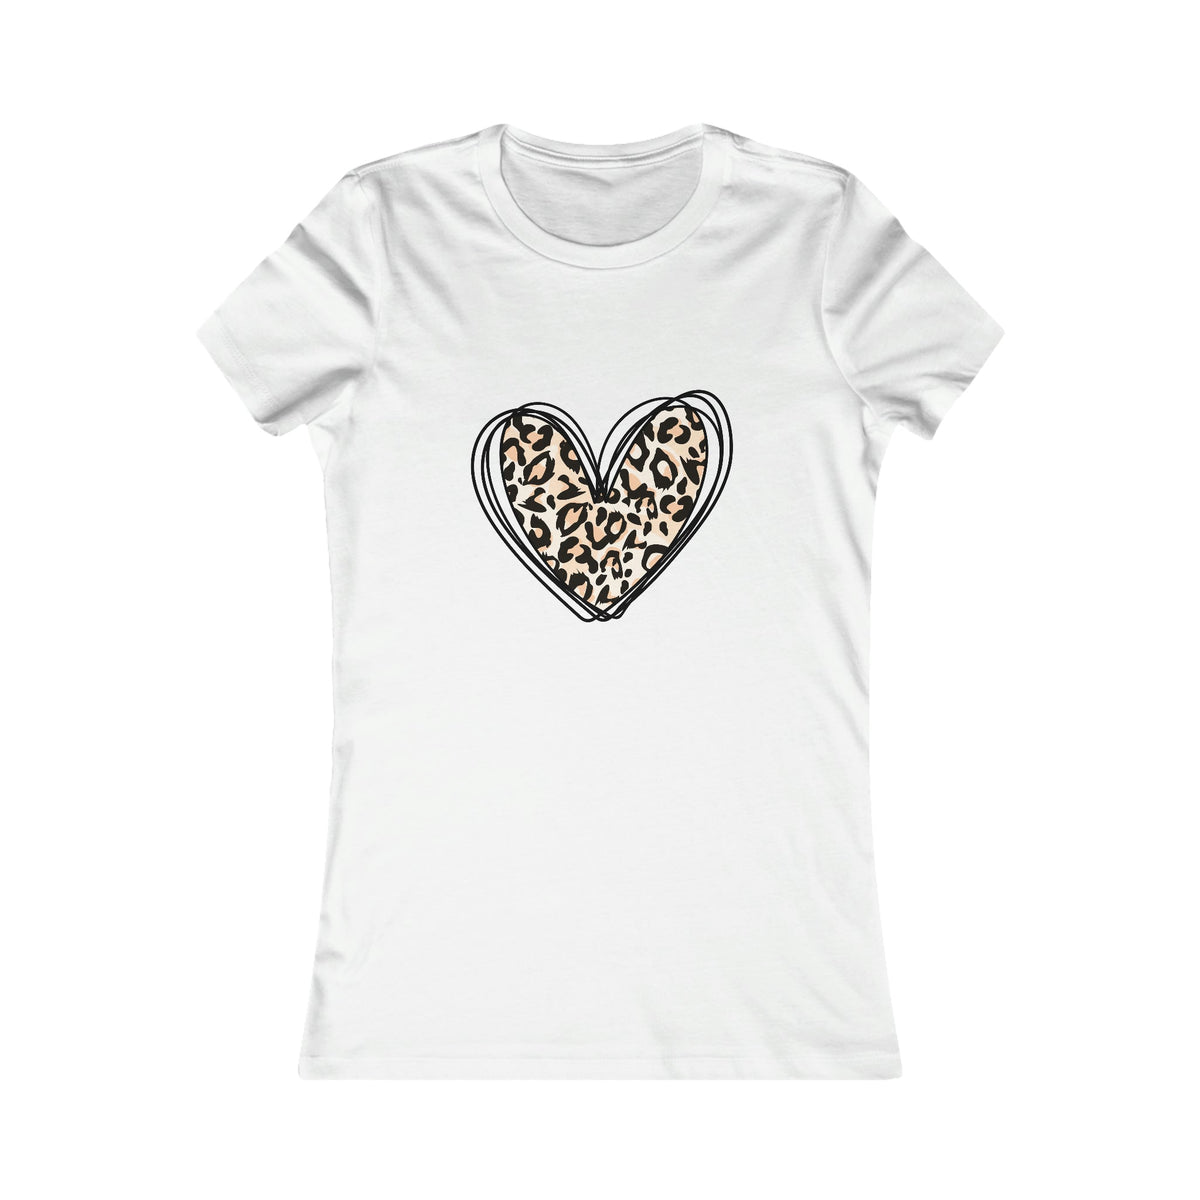 Leopard Heart Women's Tee - Salty Medic Clothing Co.